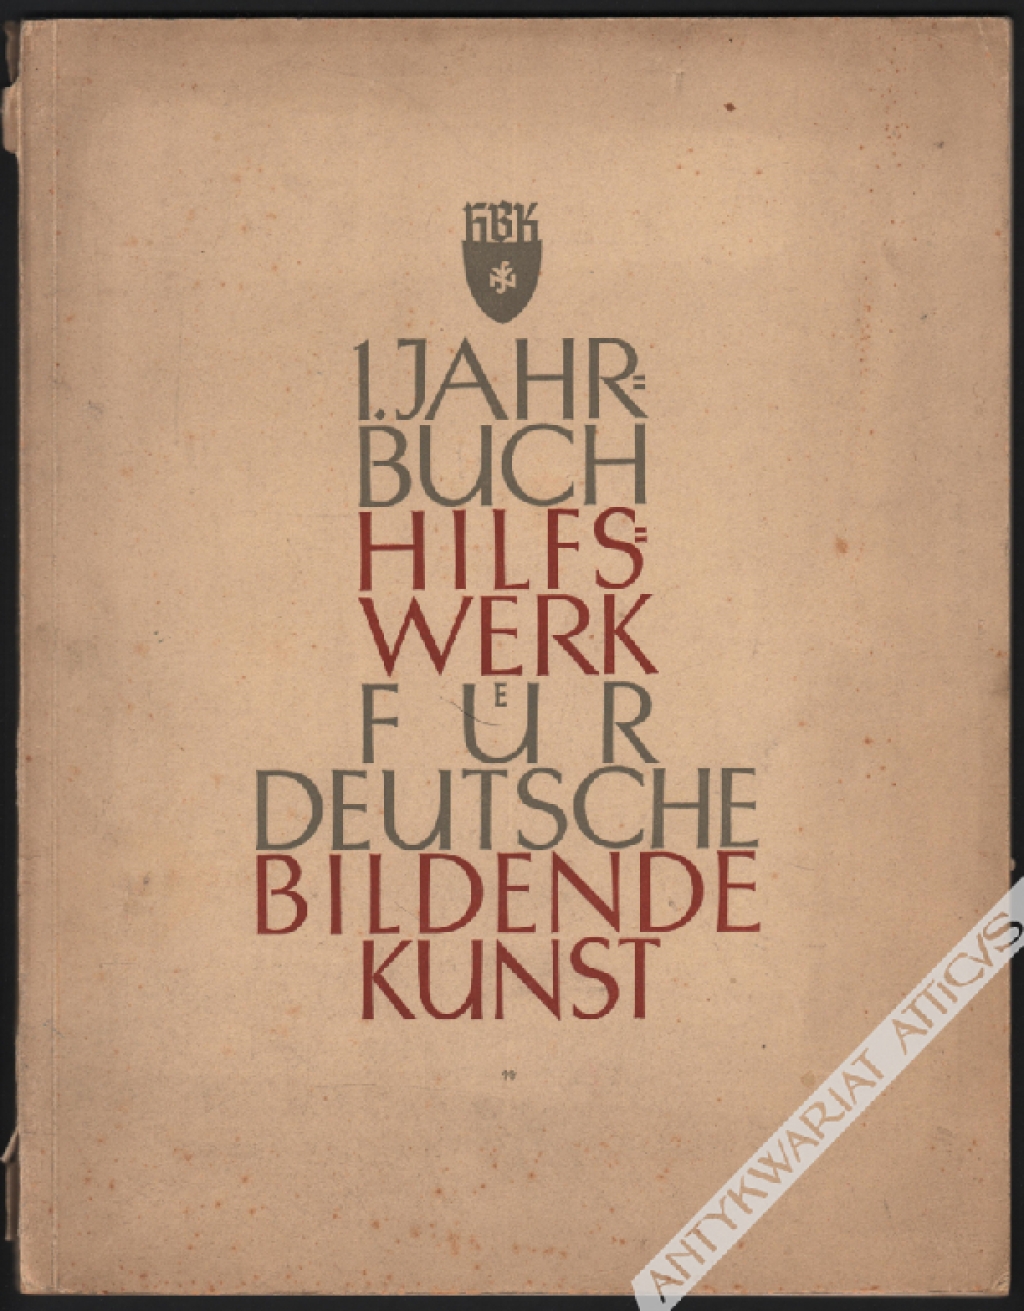 1. Jahrbuch Hilfswerk für deutsche Bildende Kunst